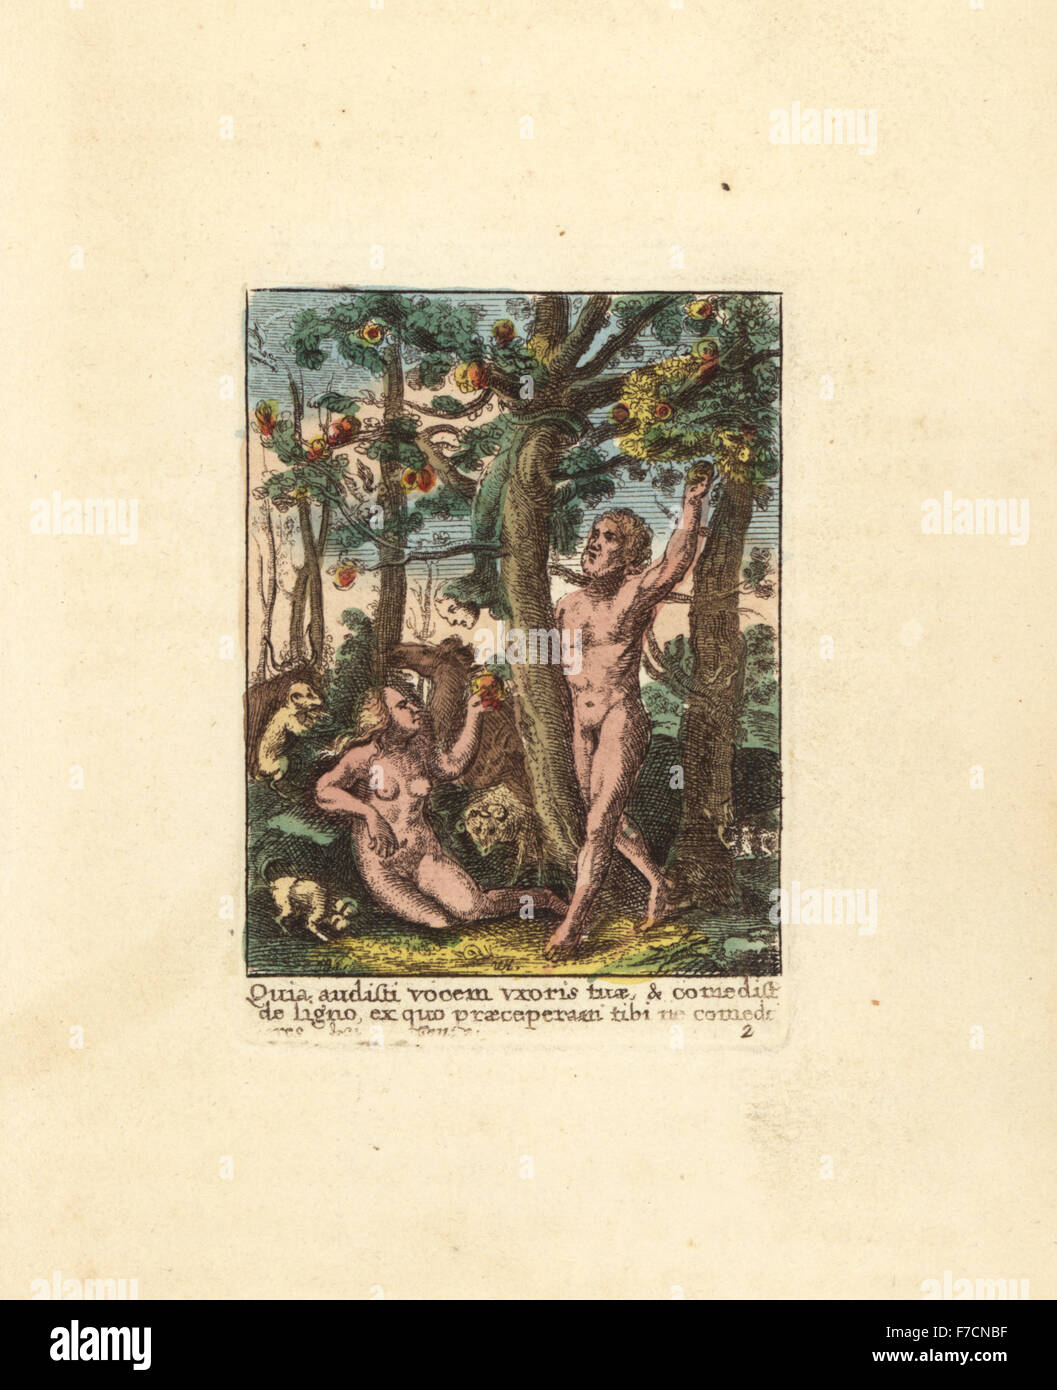 Adam et Eve plumer une pomme de dégustation du fruit défendu dans le jardin d'Eden, encouragés par un serpent avec une tête humaine. La gravure sur cuivre coloriée par Wenceslaus Hollar à partir de la danse de la mort de Hans Holbein, Coxhead, Londres, 1816. Banque D'Images